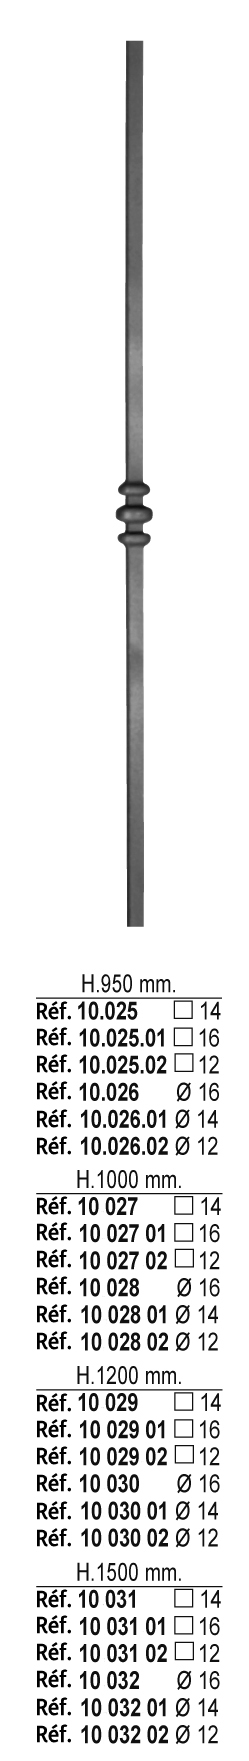 Barreau à souder en fer forgé à chaud. Section ronde de ø16mm de diamètre et 950mm de hauteur. En acier lisse. Composé d'un motif central. Différentes hauteurs au choix.